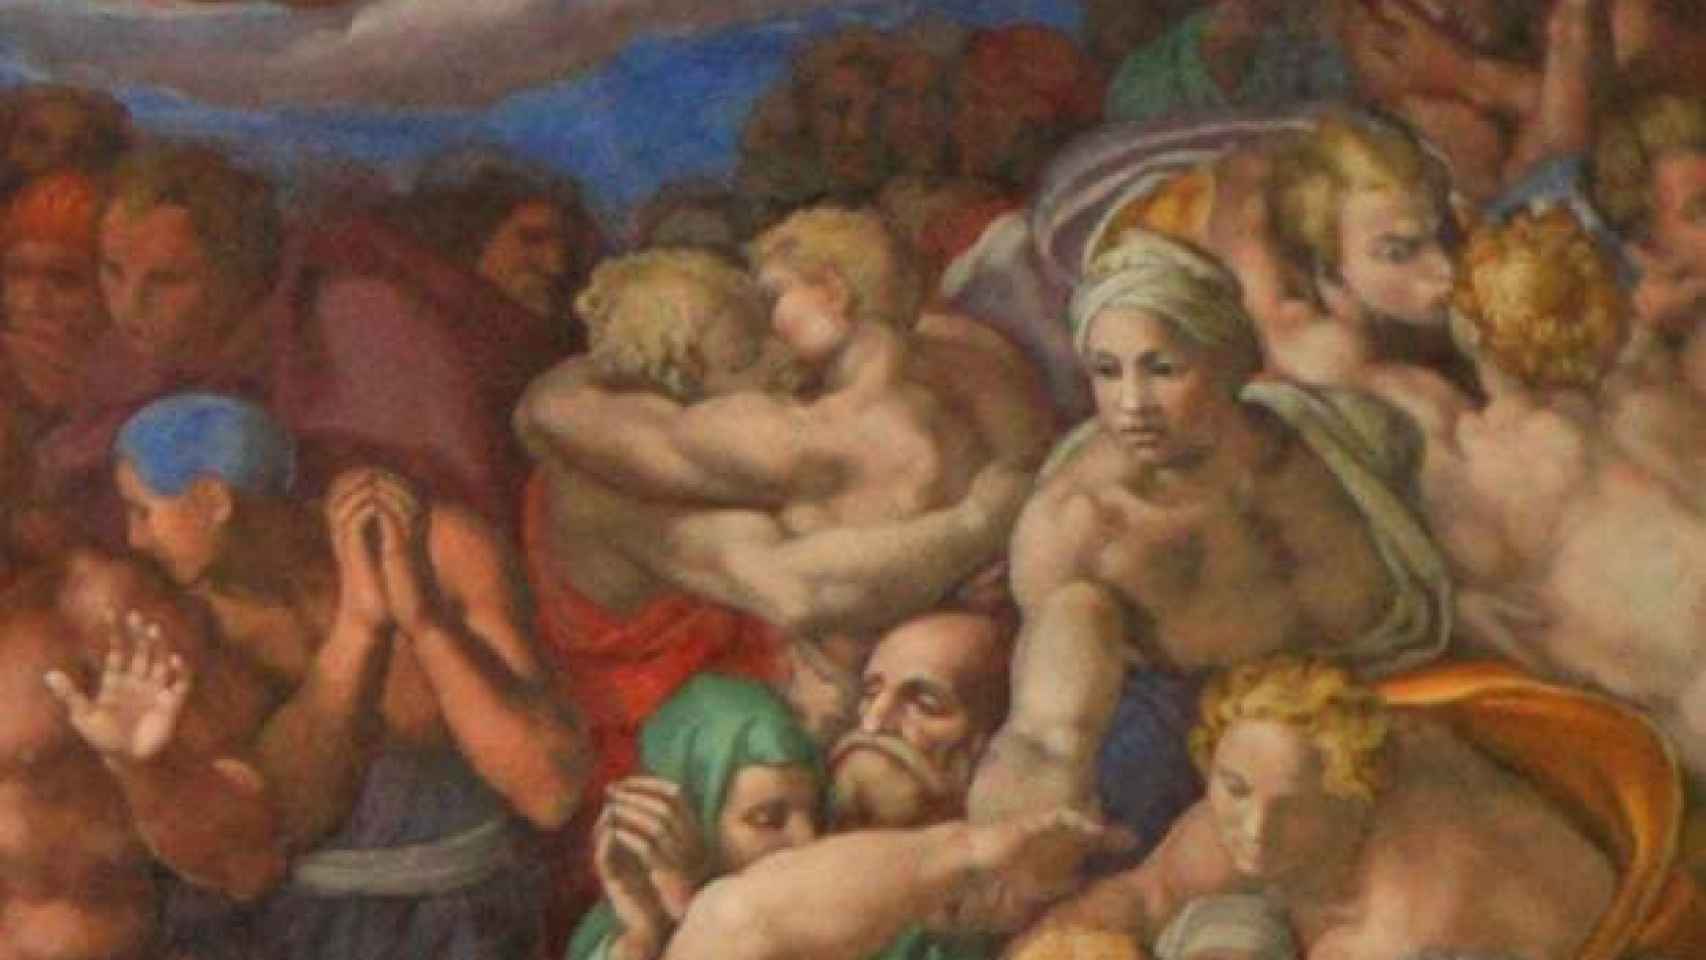 Parte del fresco del Juicio Final en la Capilla Sixtina, que representa un beso entre dos hombres.